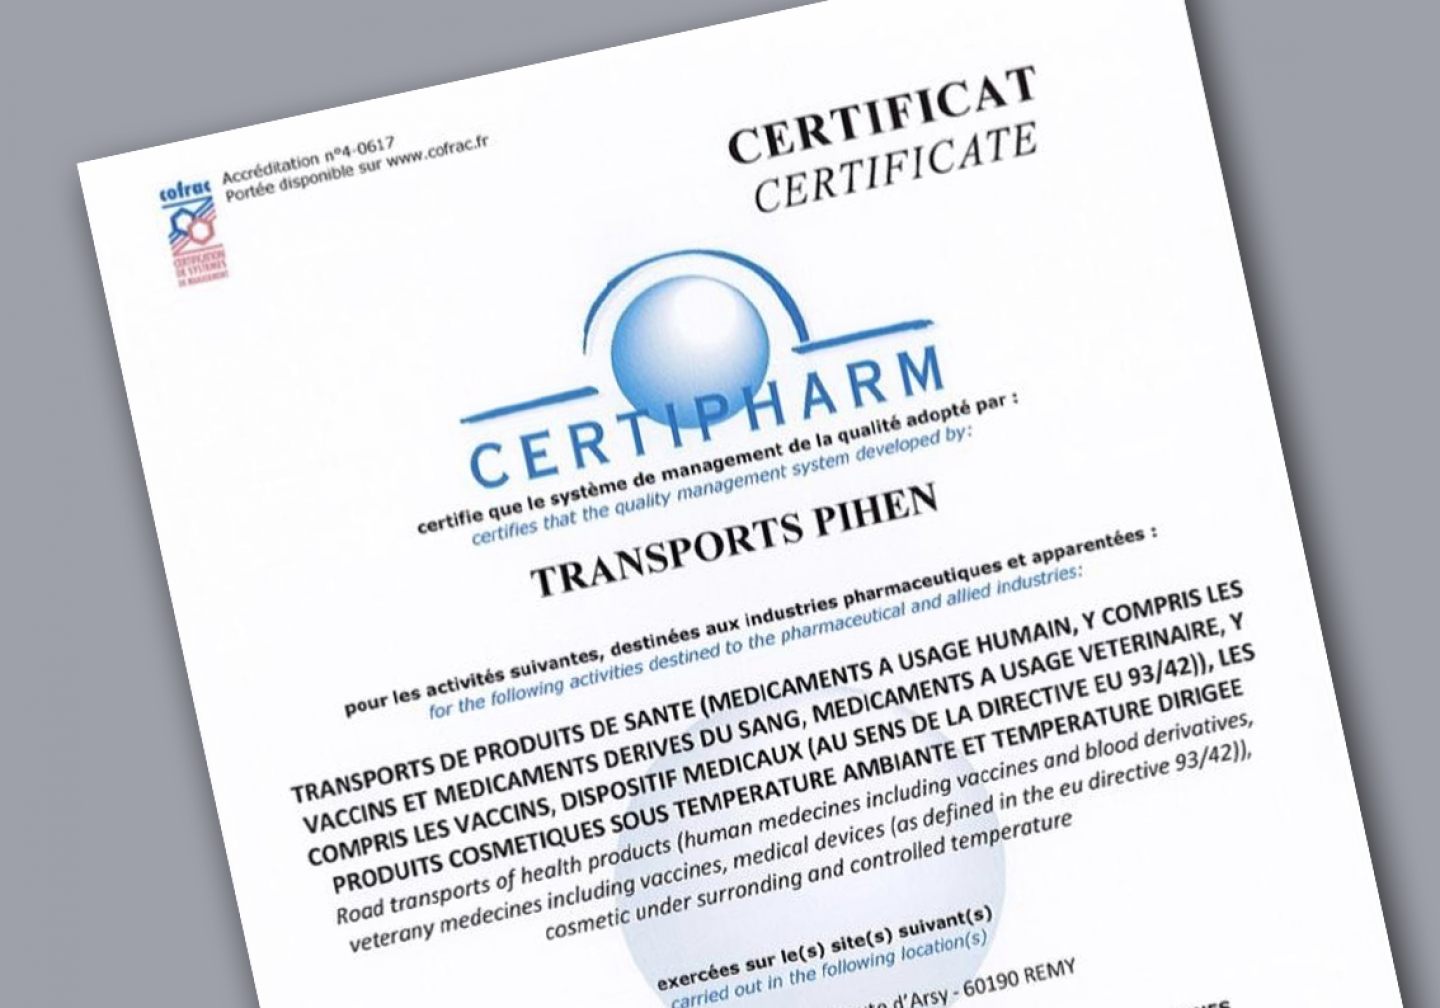 Pihen-Certif-Certipharm-2021